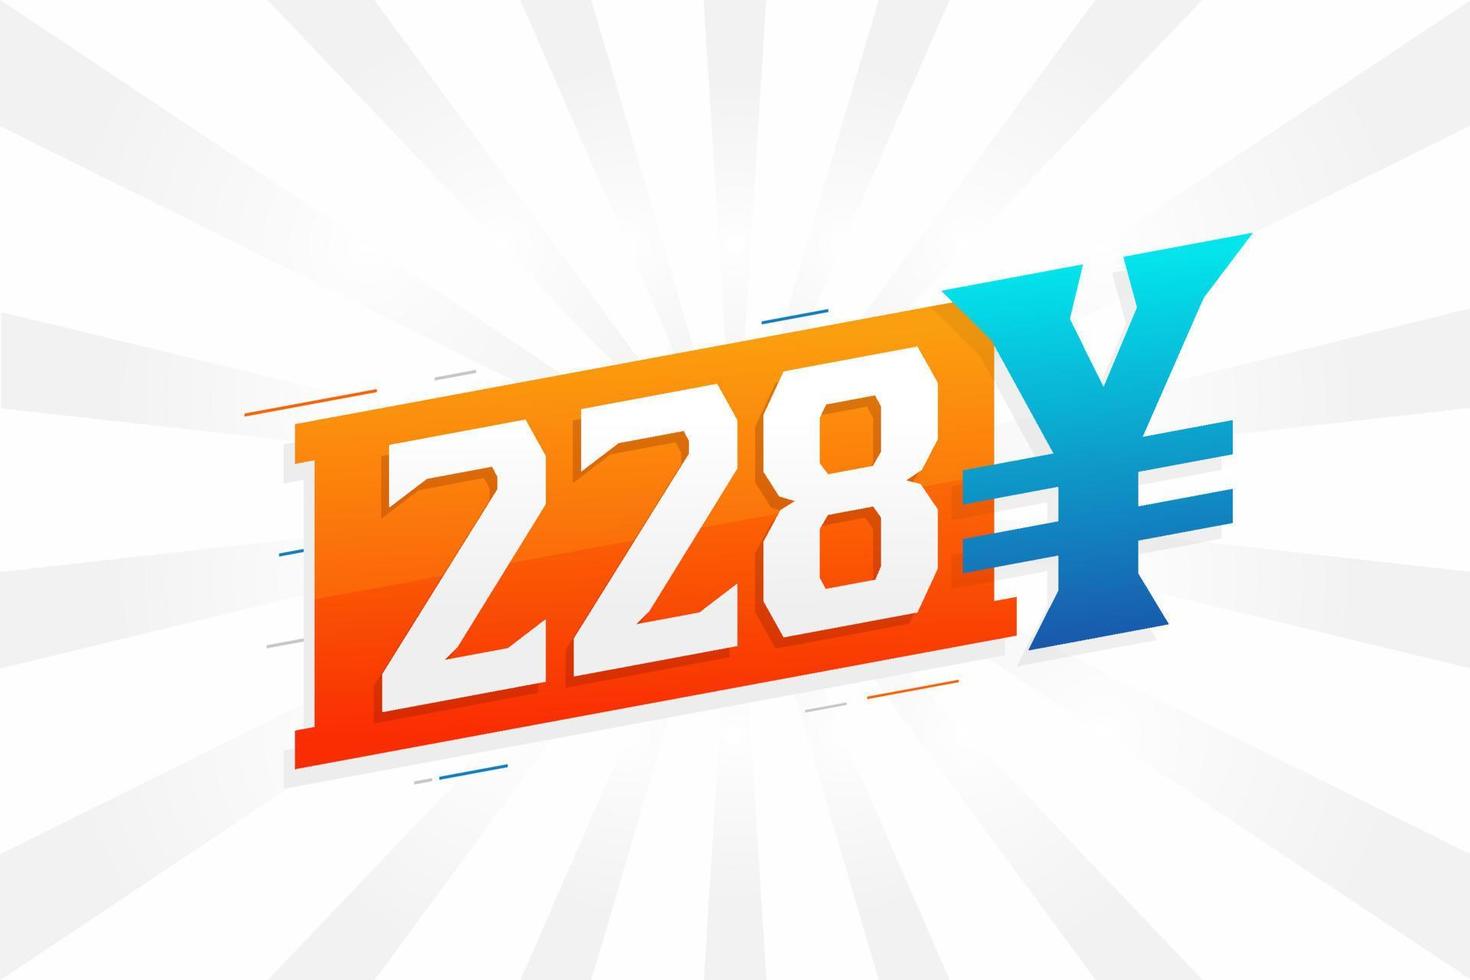 Símbolo de texto vectorial de moneda china de 228 yuanes. 228 yen moneda japonesa dinero stock vector